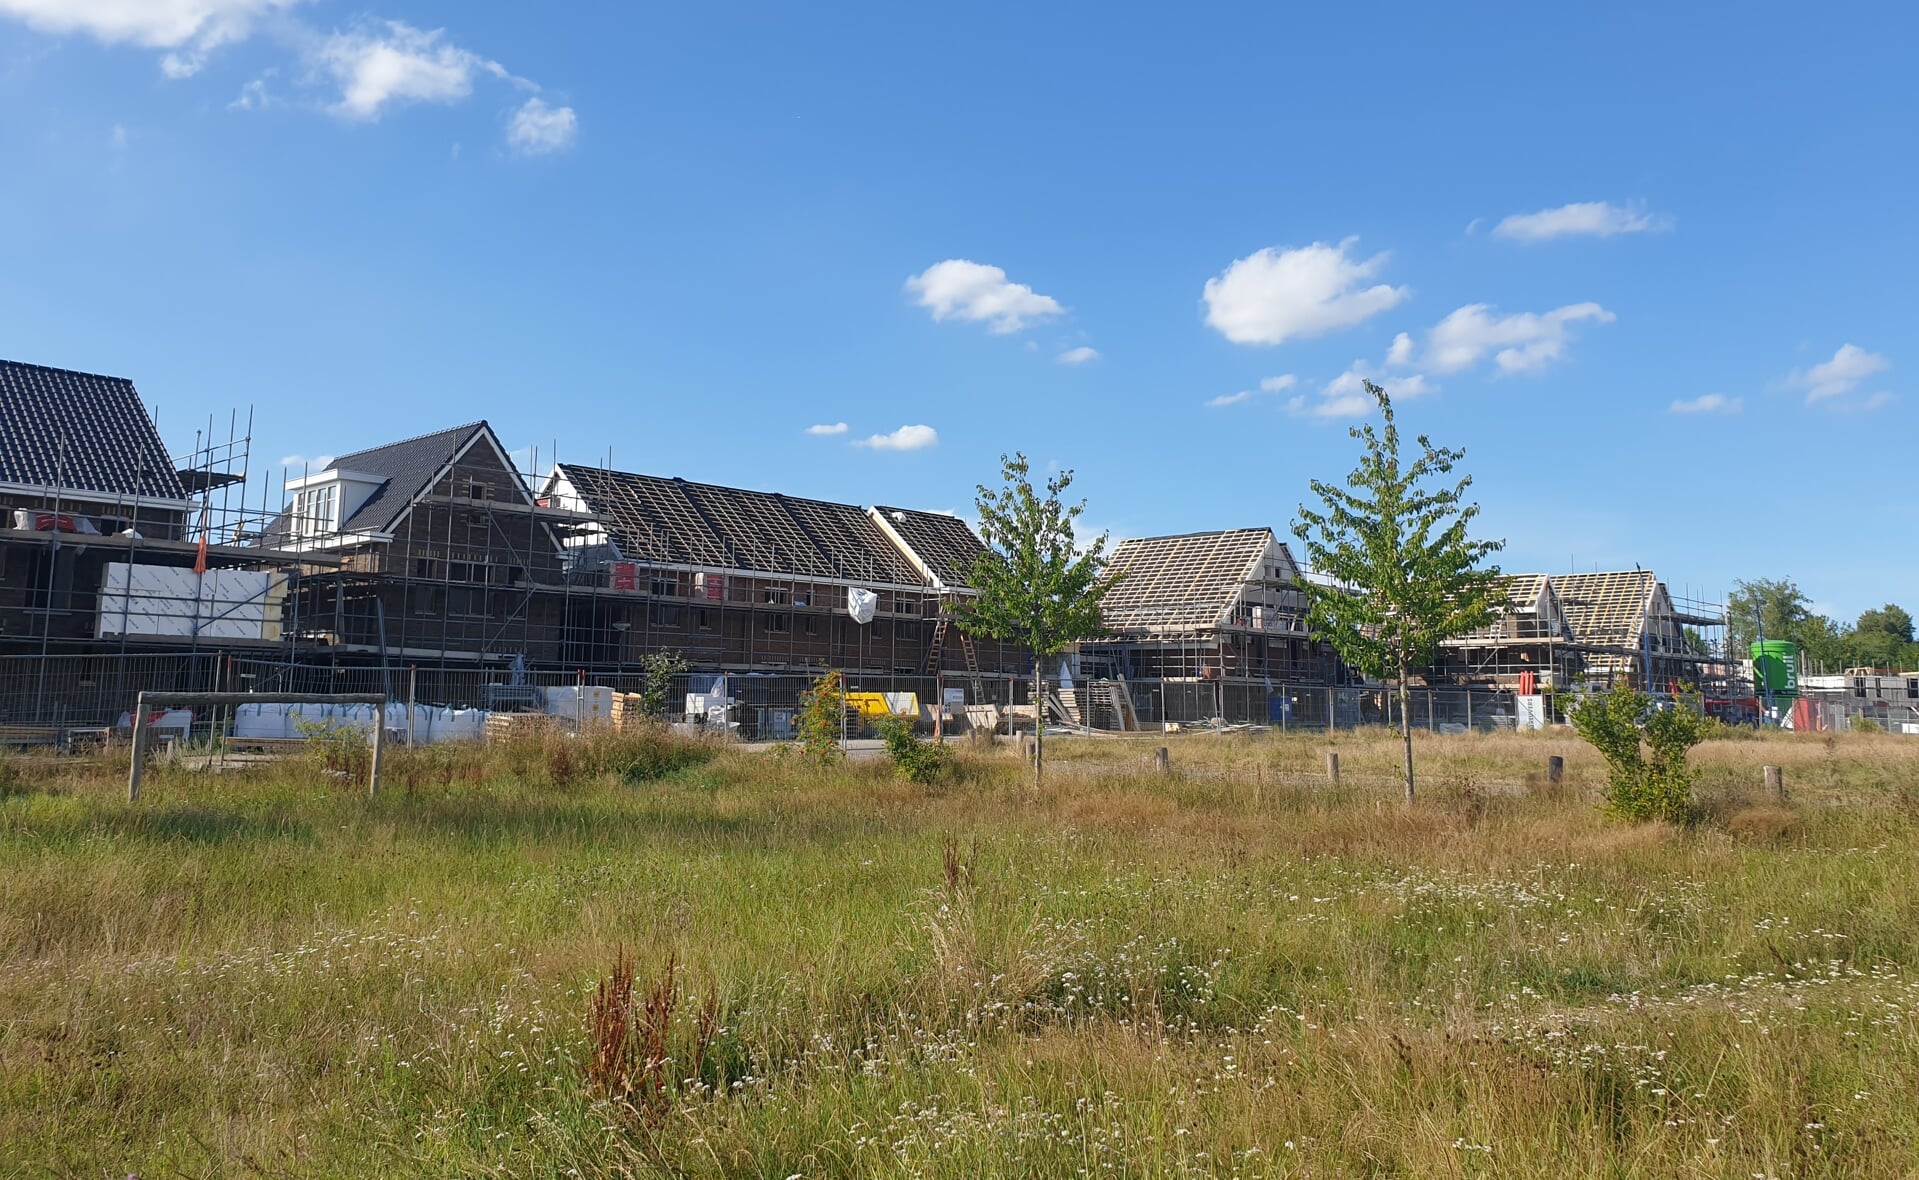 Fase twee van de nieuwbouwwijk Reigerskant is al aardig op weg. Hier zijn 27 woningen in aanbouw, waarvan acht voor starters. 